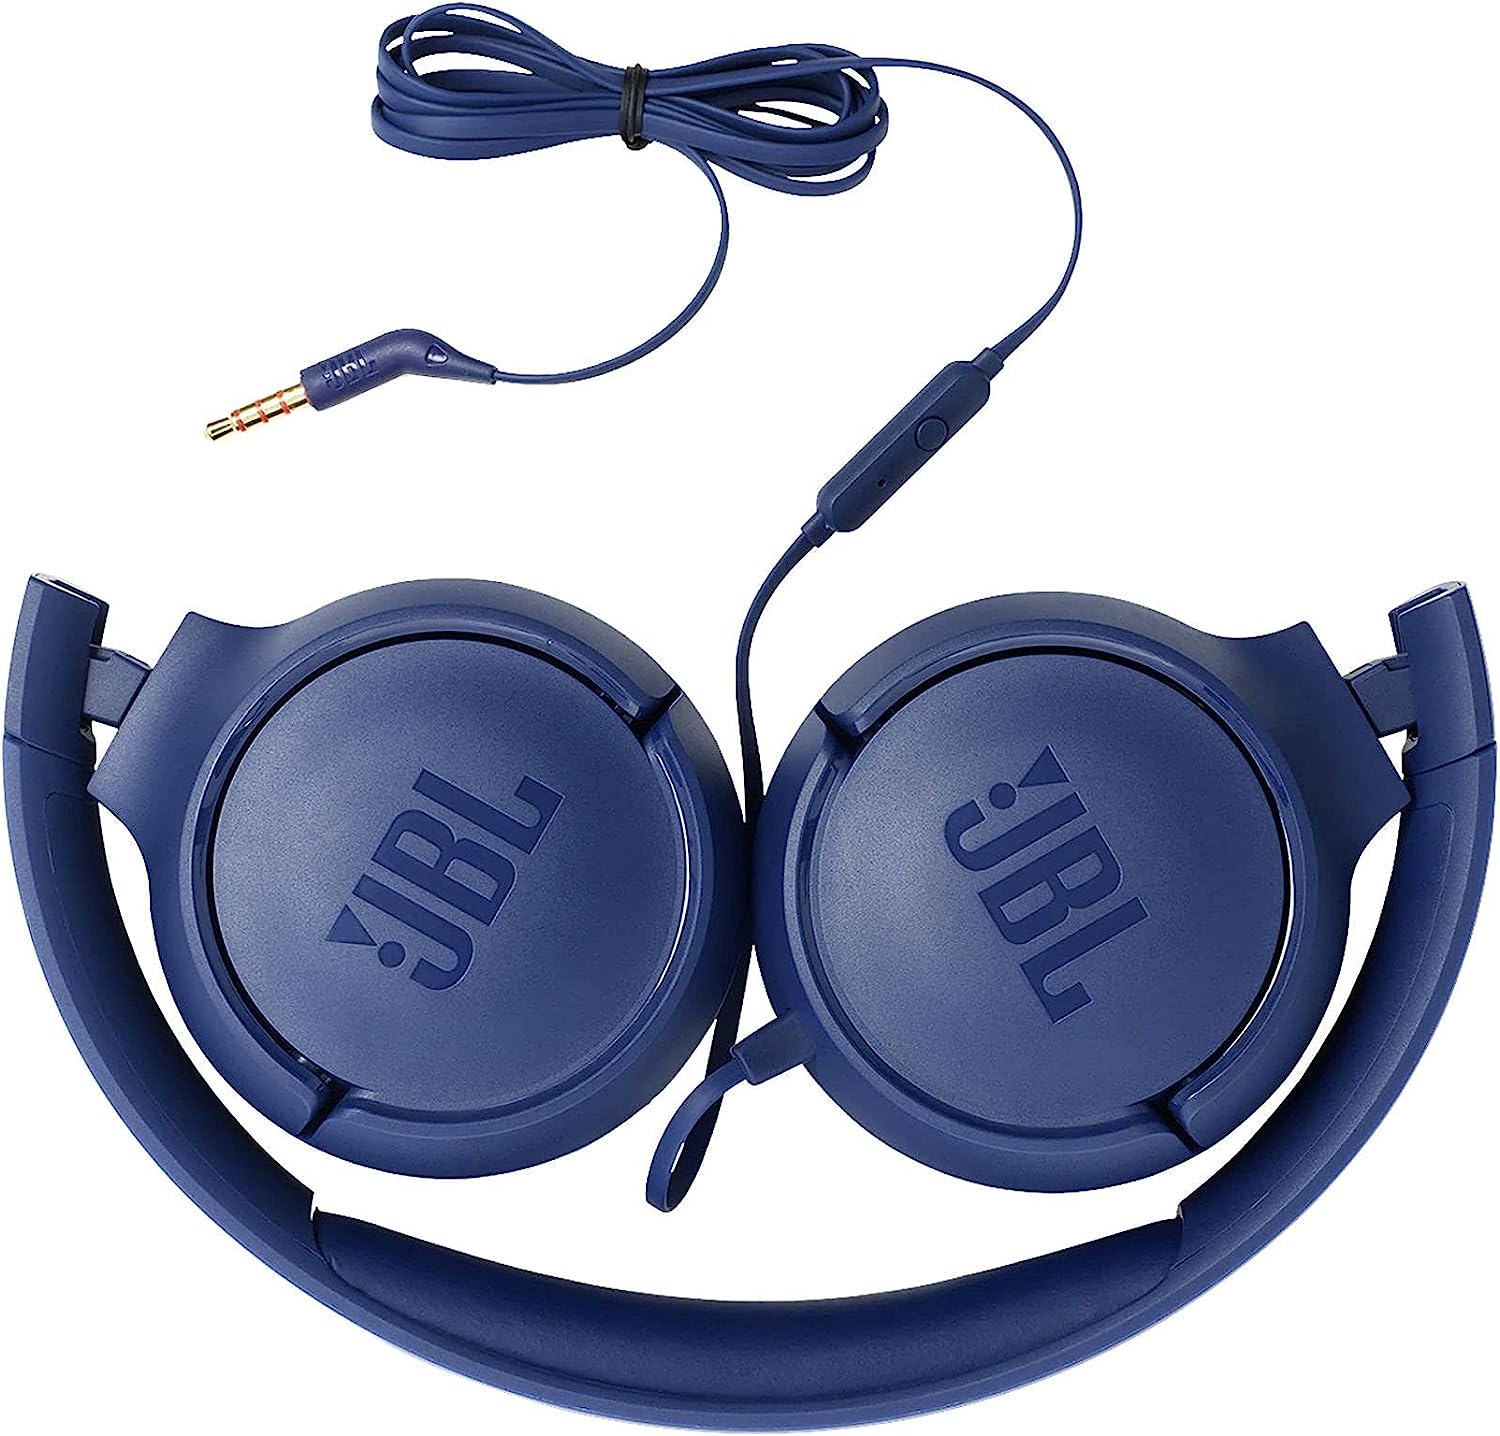 TUNE 500 Auriculares intrauditivos con cable, color azul